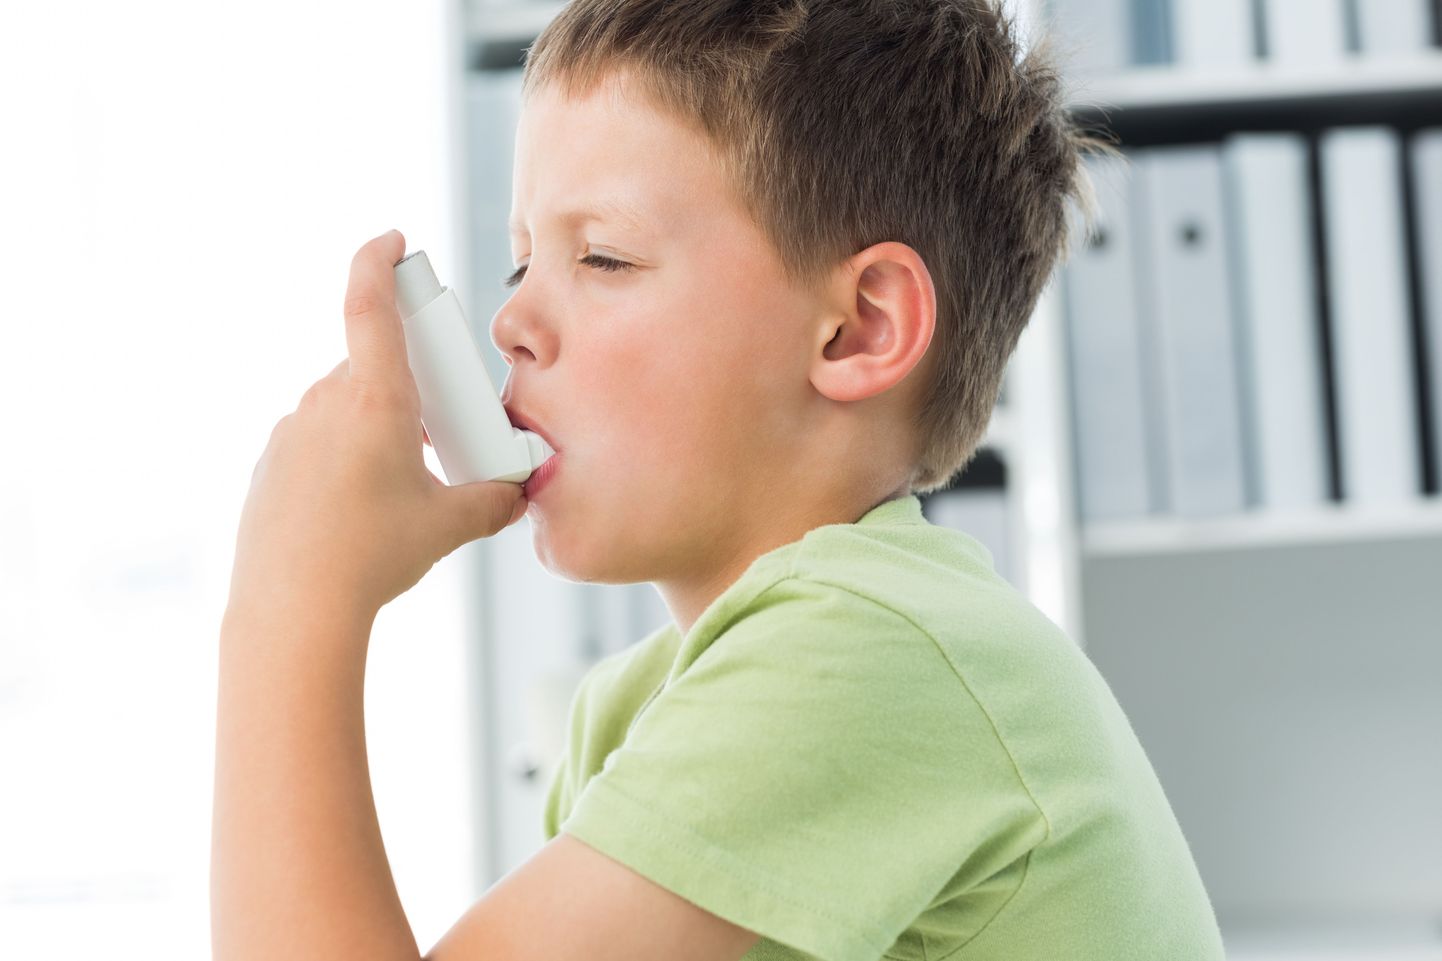 Astmat ja ülekaalu on varemgi seostatud.